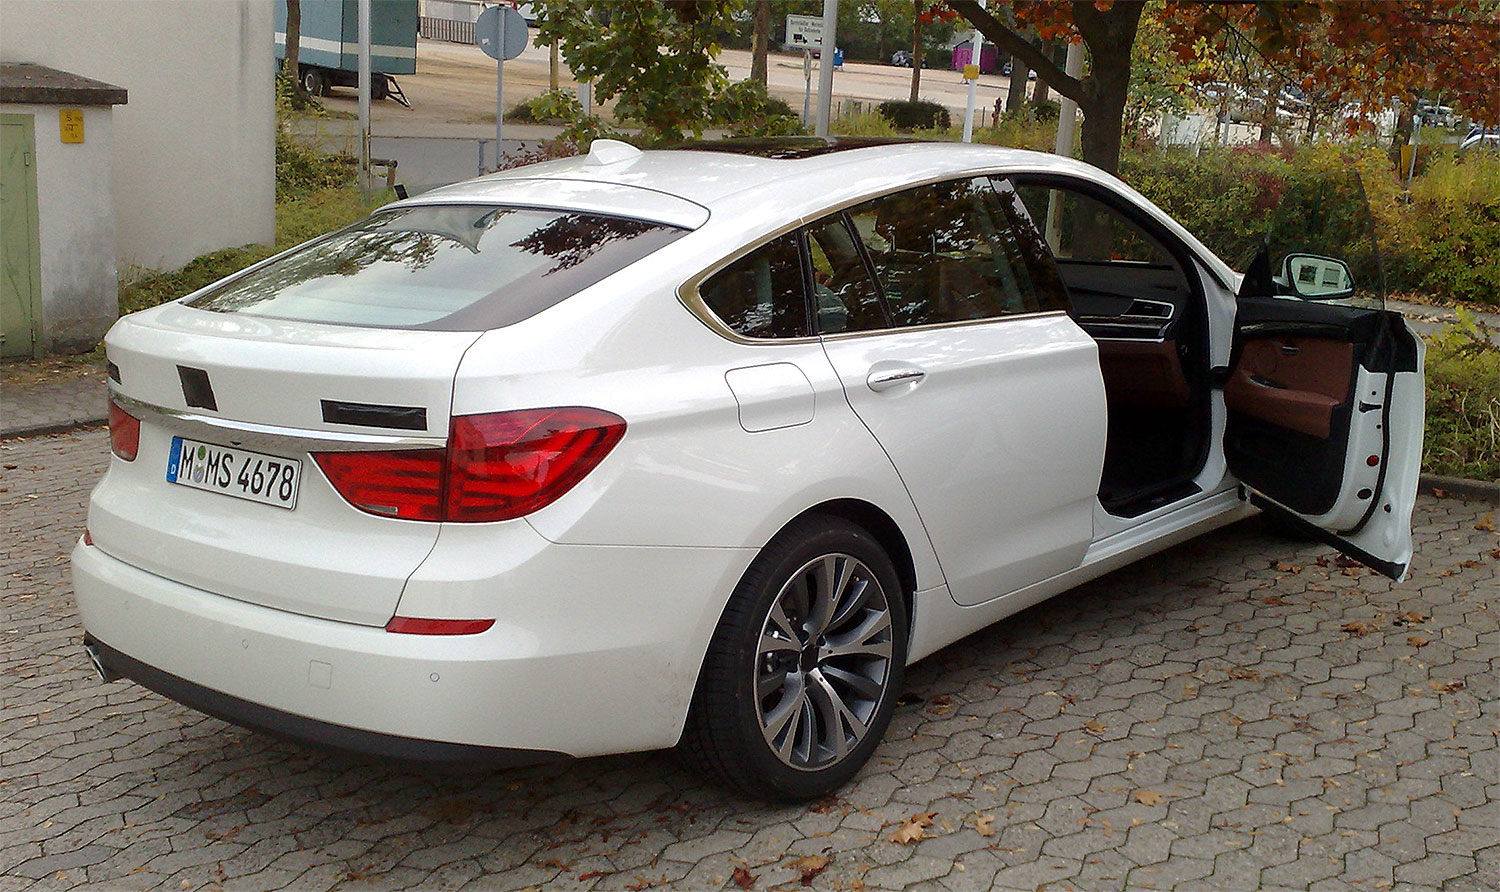 File:BMW 5er GT rear.jpg - Wikimedia Commons